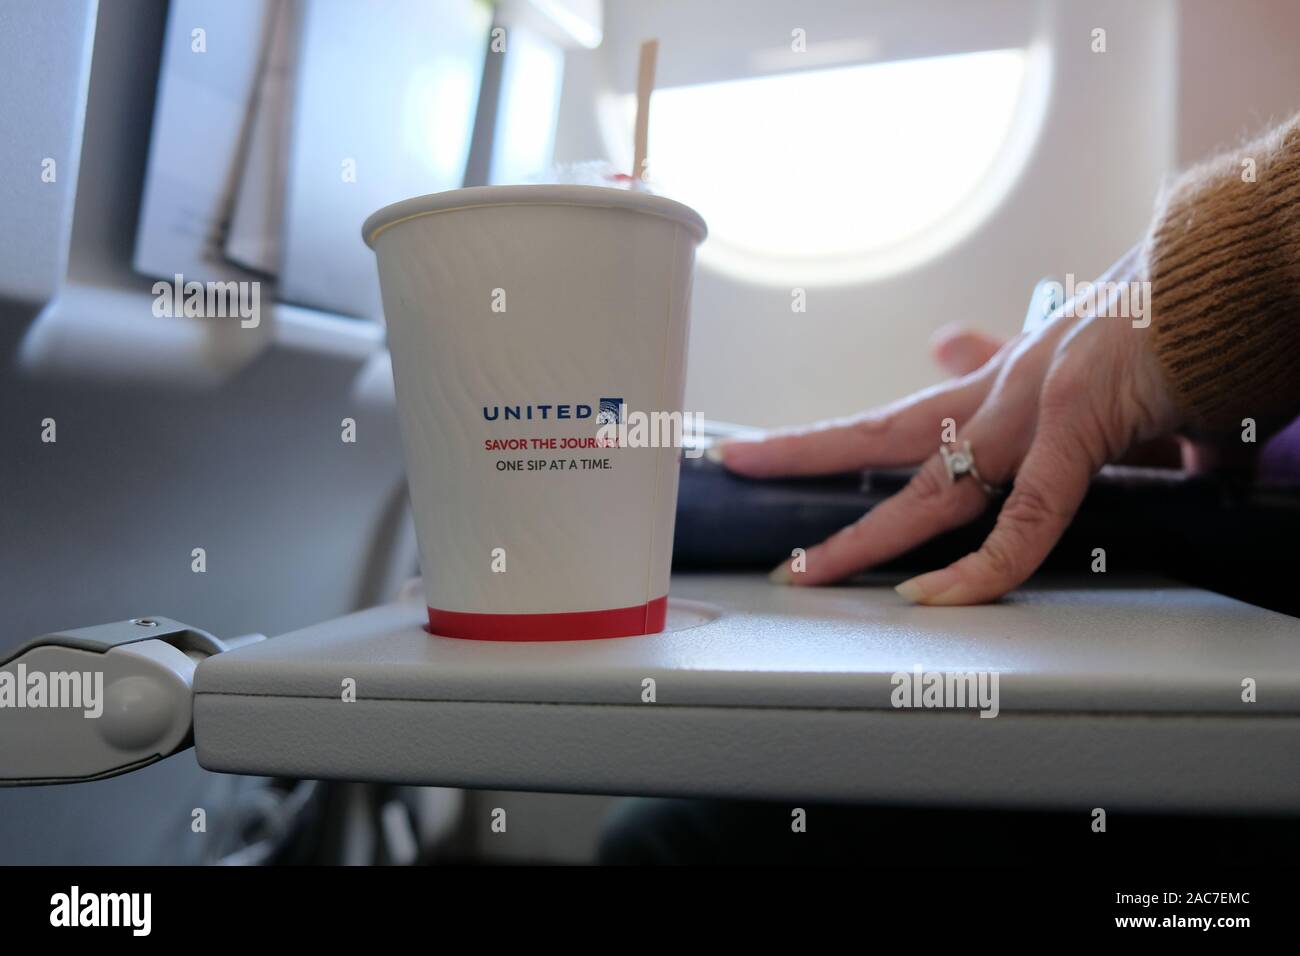 United Airlines tazza da caffè con logo e assaporare il viaggio un Sip in un momento tag line su un aereo vassoio tabella. Foto Stock